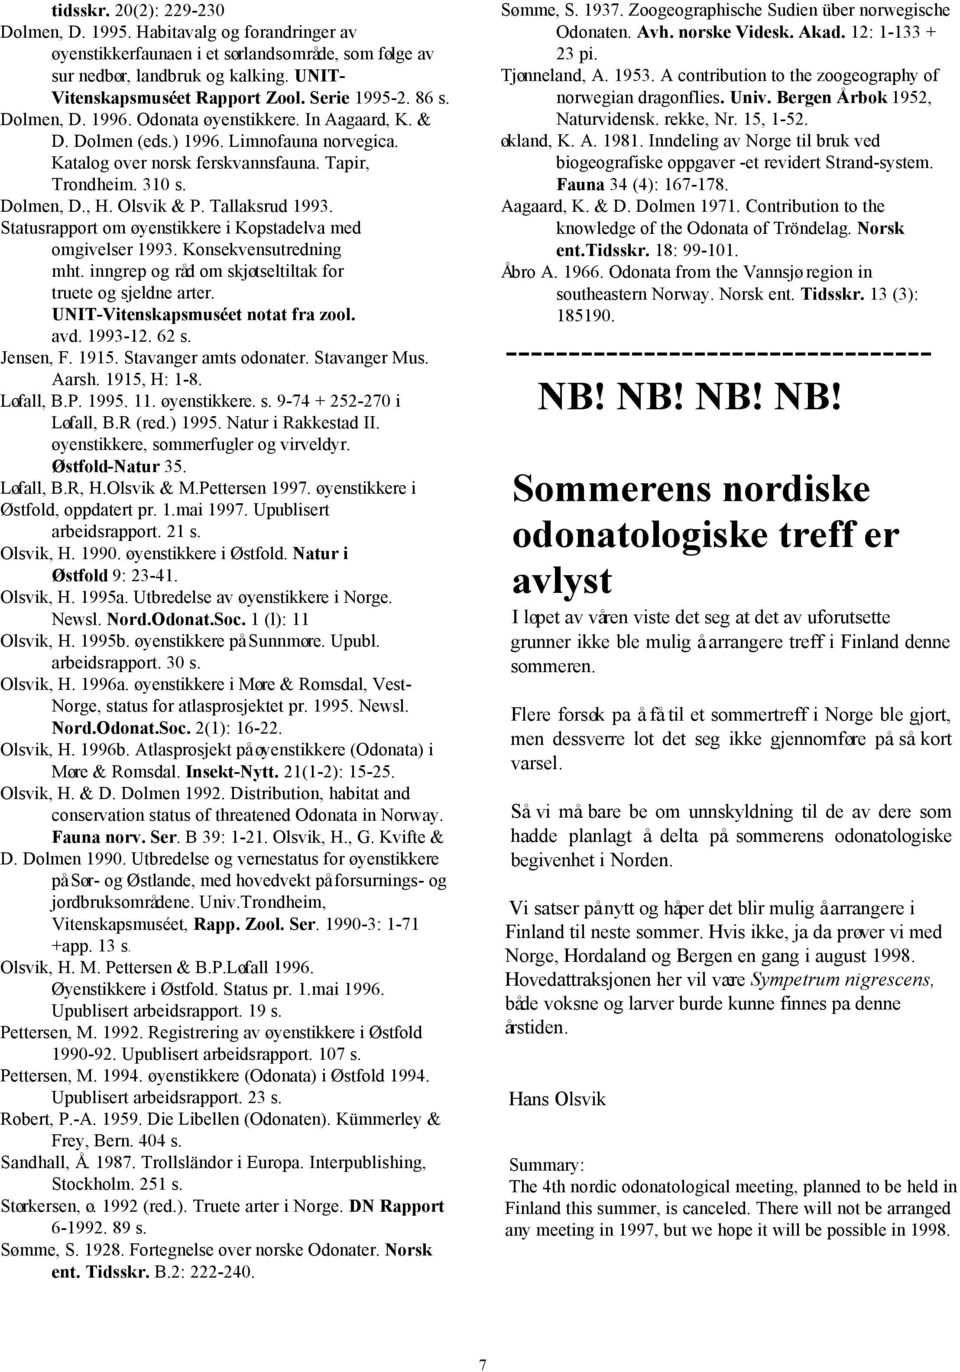 Olsvik & P. Tallaksrud 1993. Statusrapport om øyenstikkere i Kopstadelva med omgivelser 1993. Konsekvensutredning mht. inngrep og råd om skjøtseltiltak for truete og sjeldne arter.